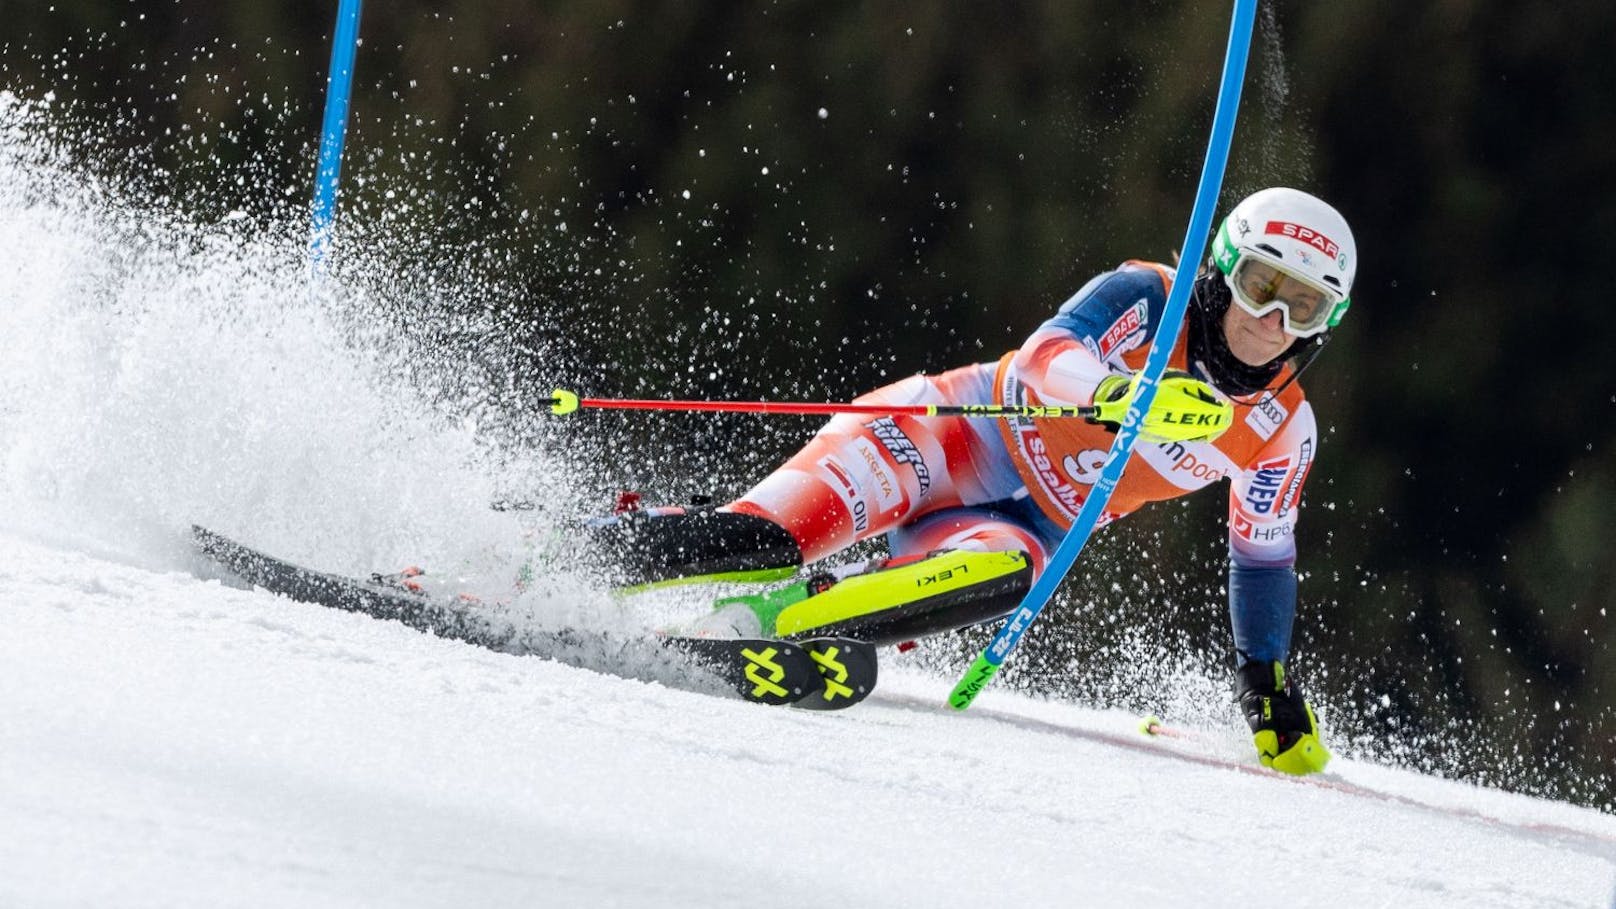 Ski-Star reißt sich im letzten Rennen das Kreuzband